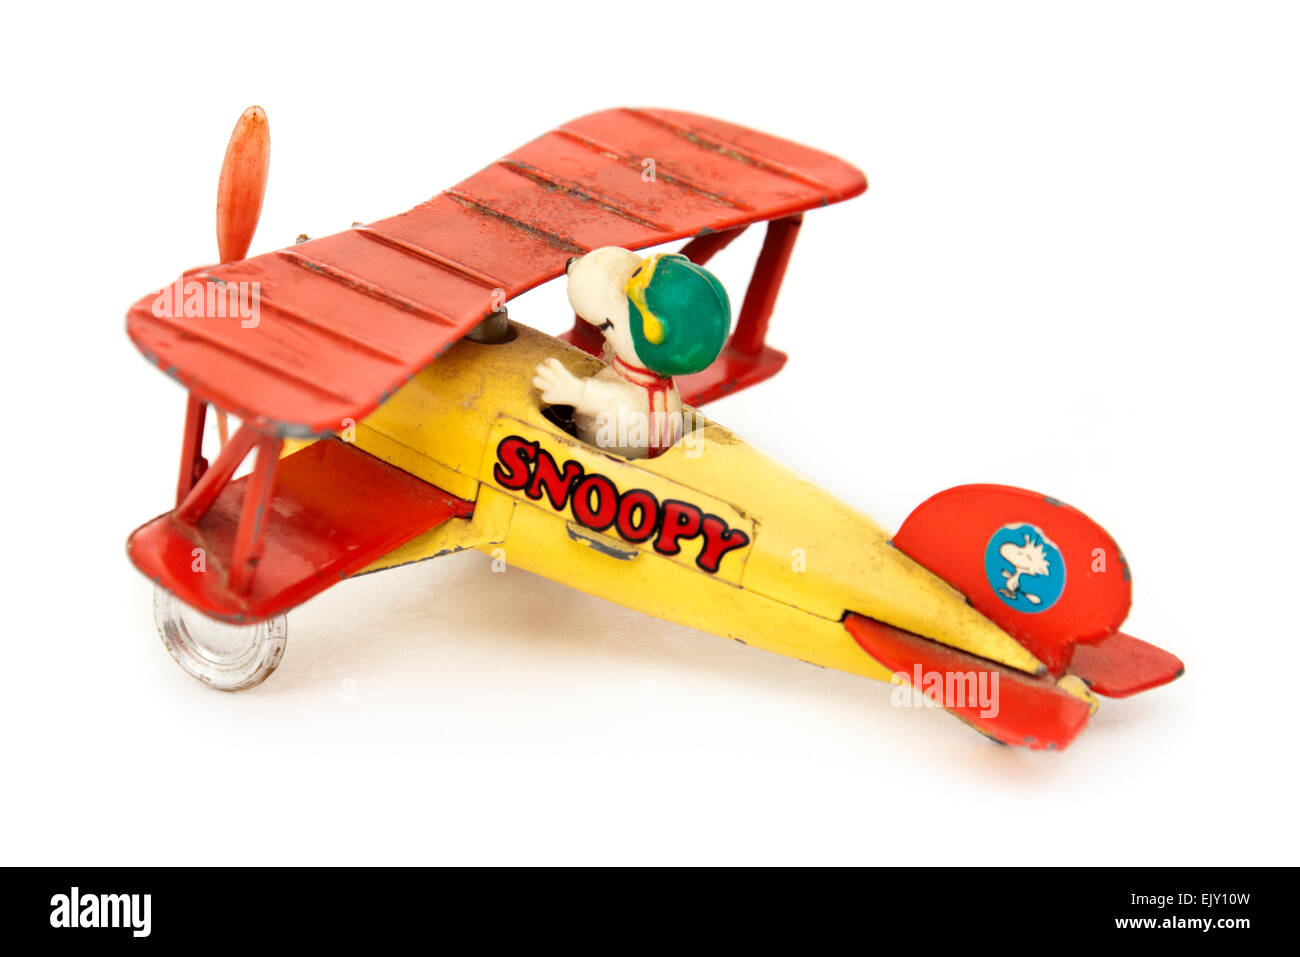 Snoopy (le chien de Charlie Brown dans les arachides bande dessinée) vintage diecast toy airplane par Aviva Toy Co. de 1965 Banque D'Images